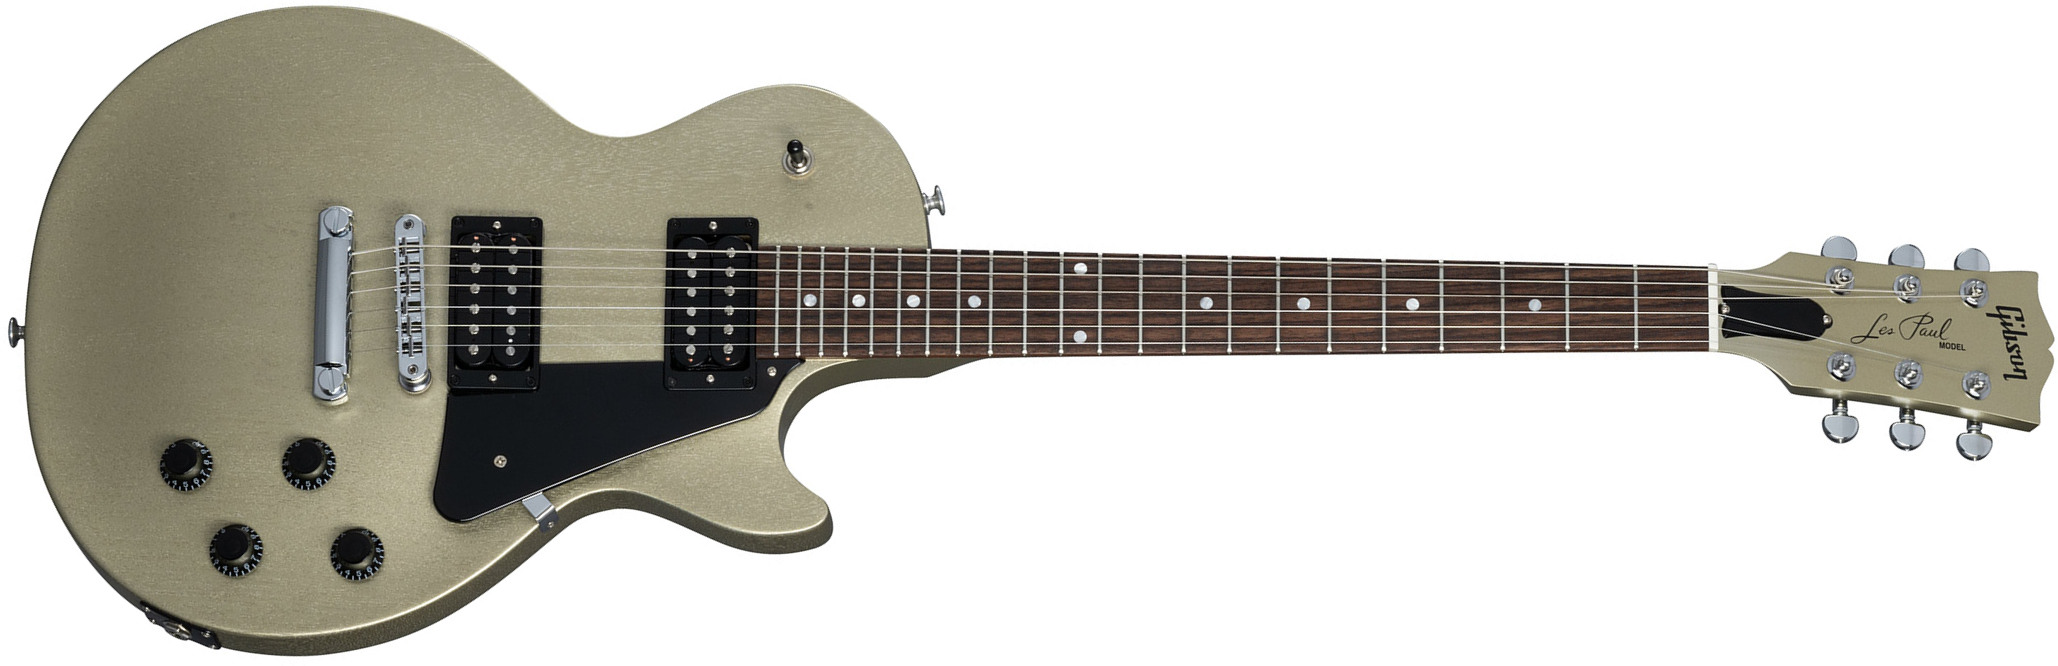 Gibson Les Paul Modern Lite 2h Ht Rw - Gold Mist Satin - Guitarra eléctrica de corte único. - Main picture